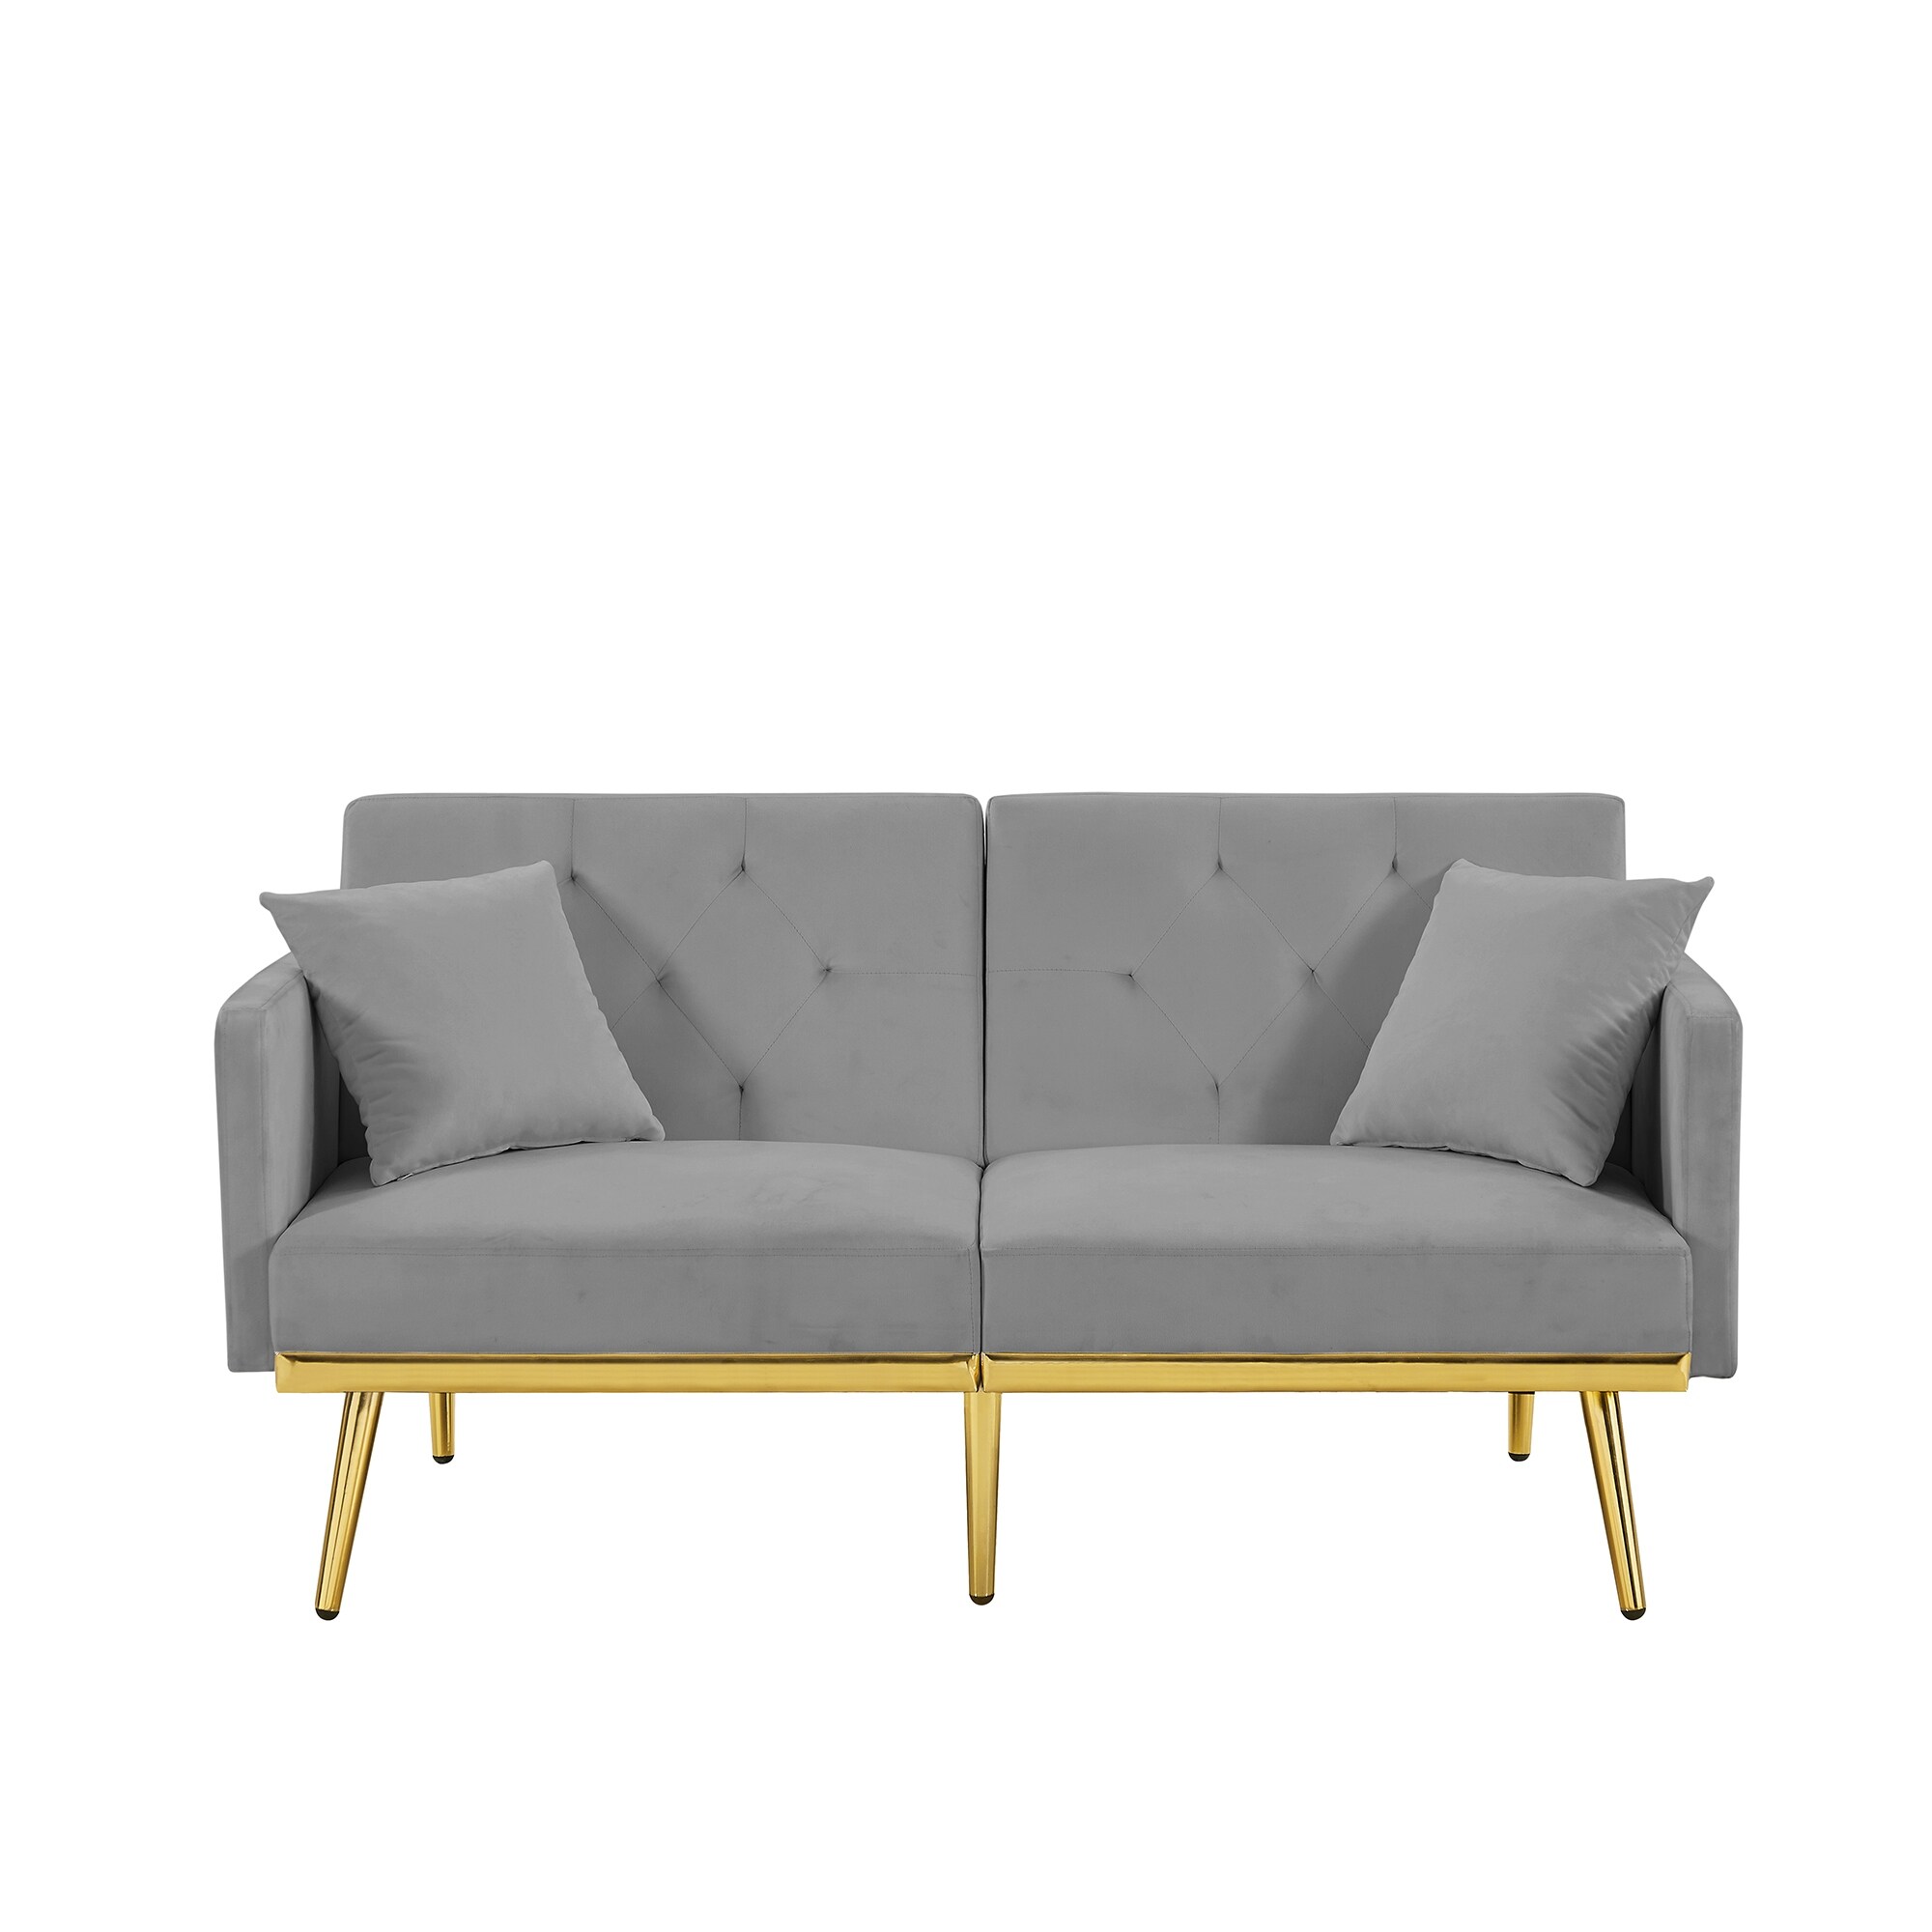 Modern Velvet Upholstered Sofa Bed With Metal Legs